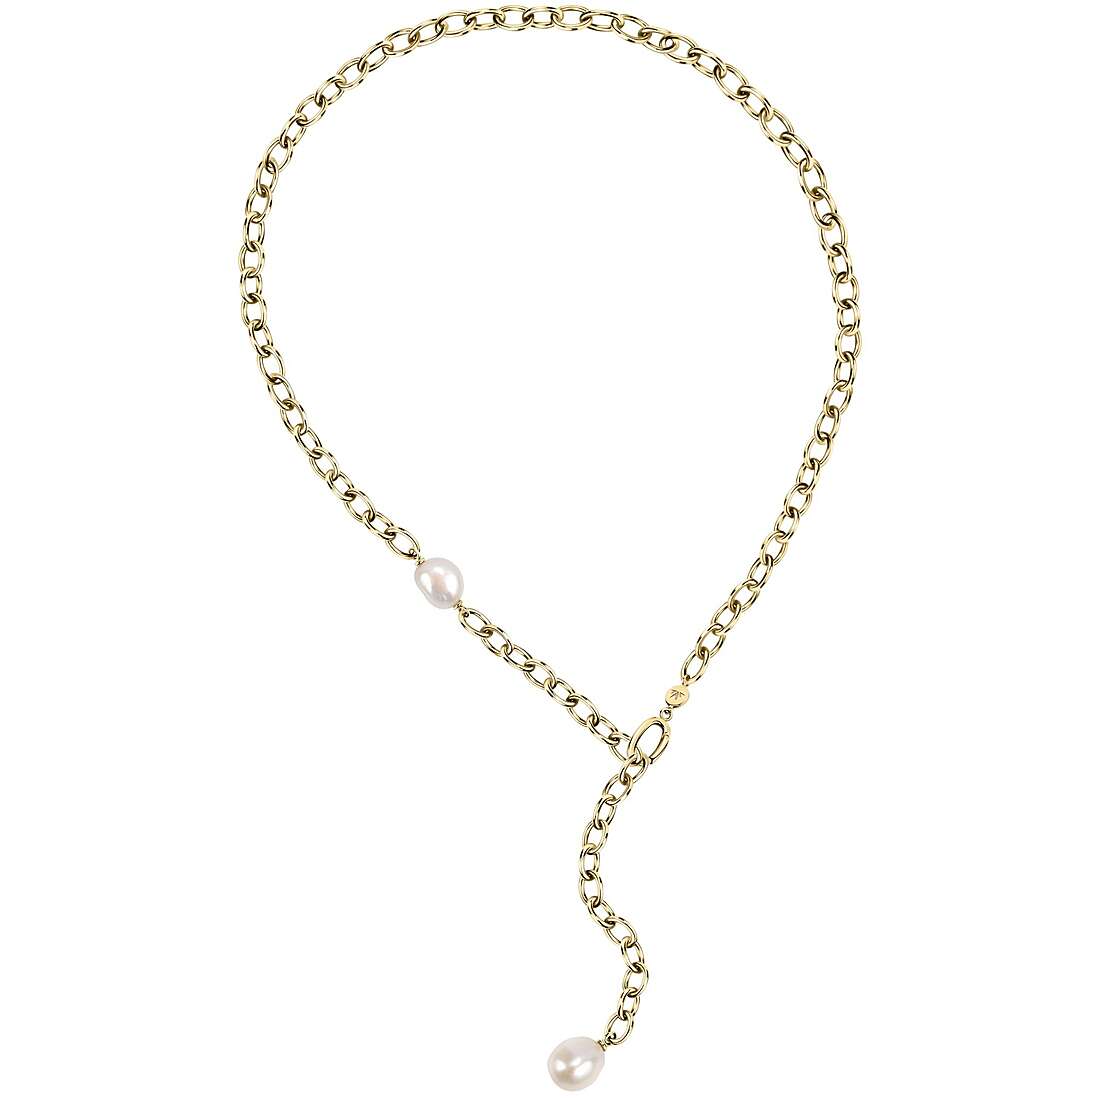 Halskette mit Perlen Morellato Oriente für frau SARI01